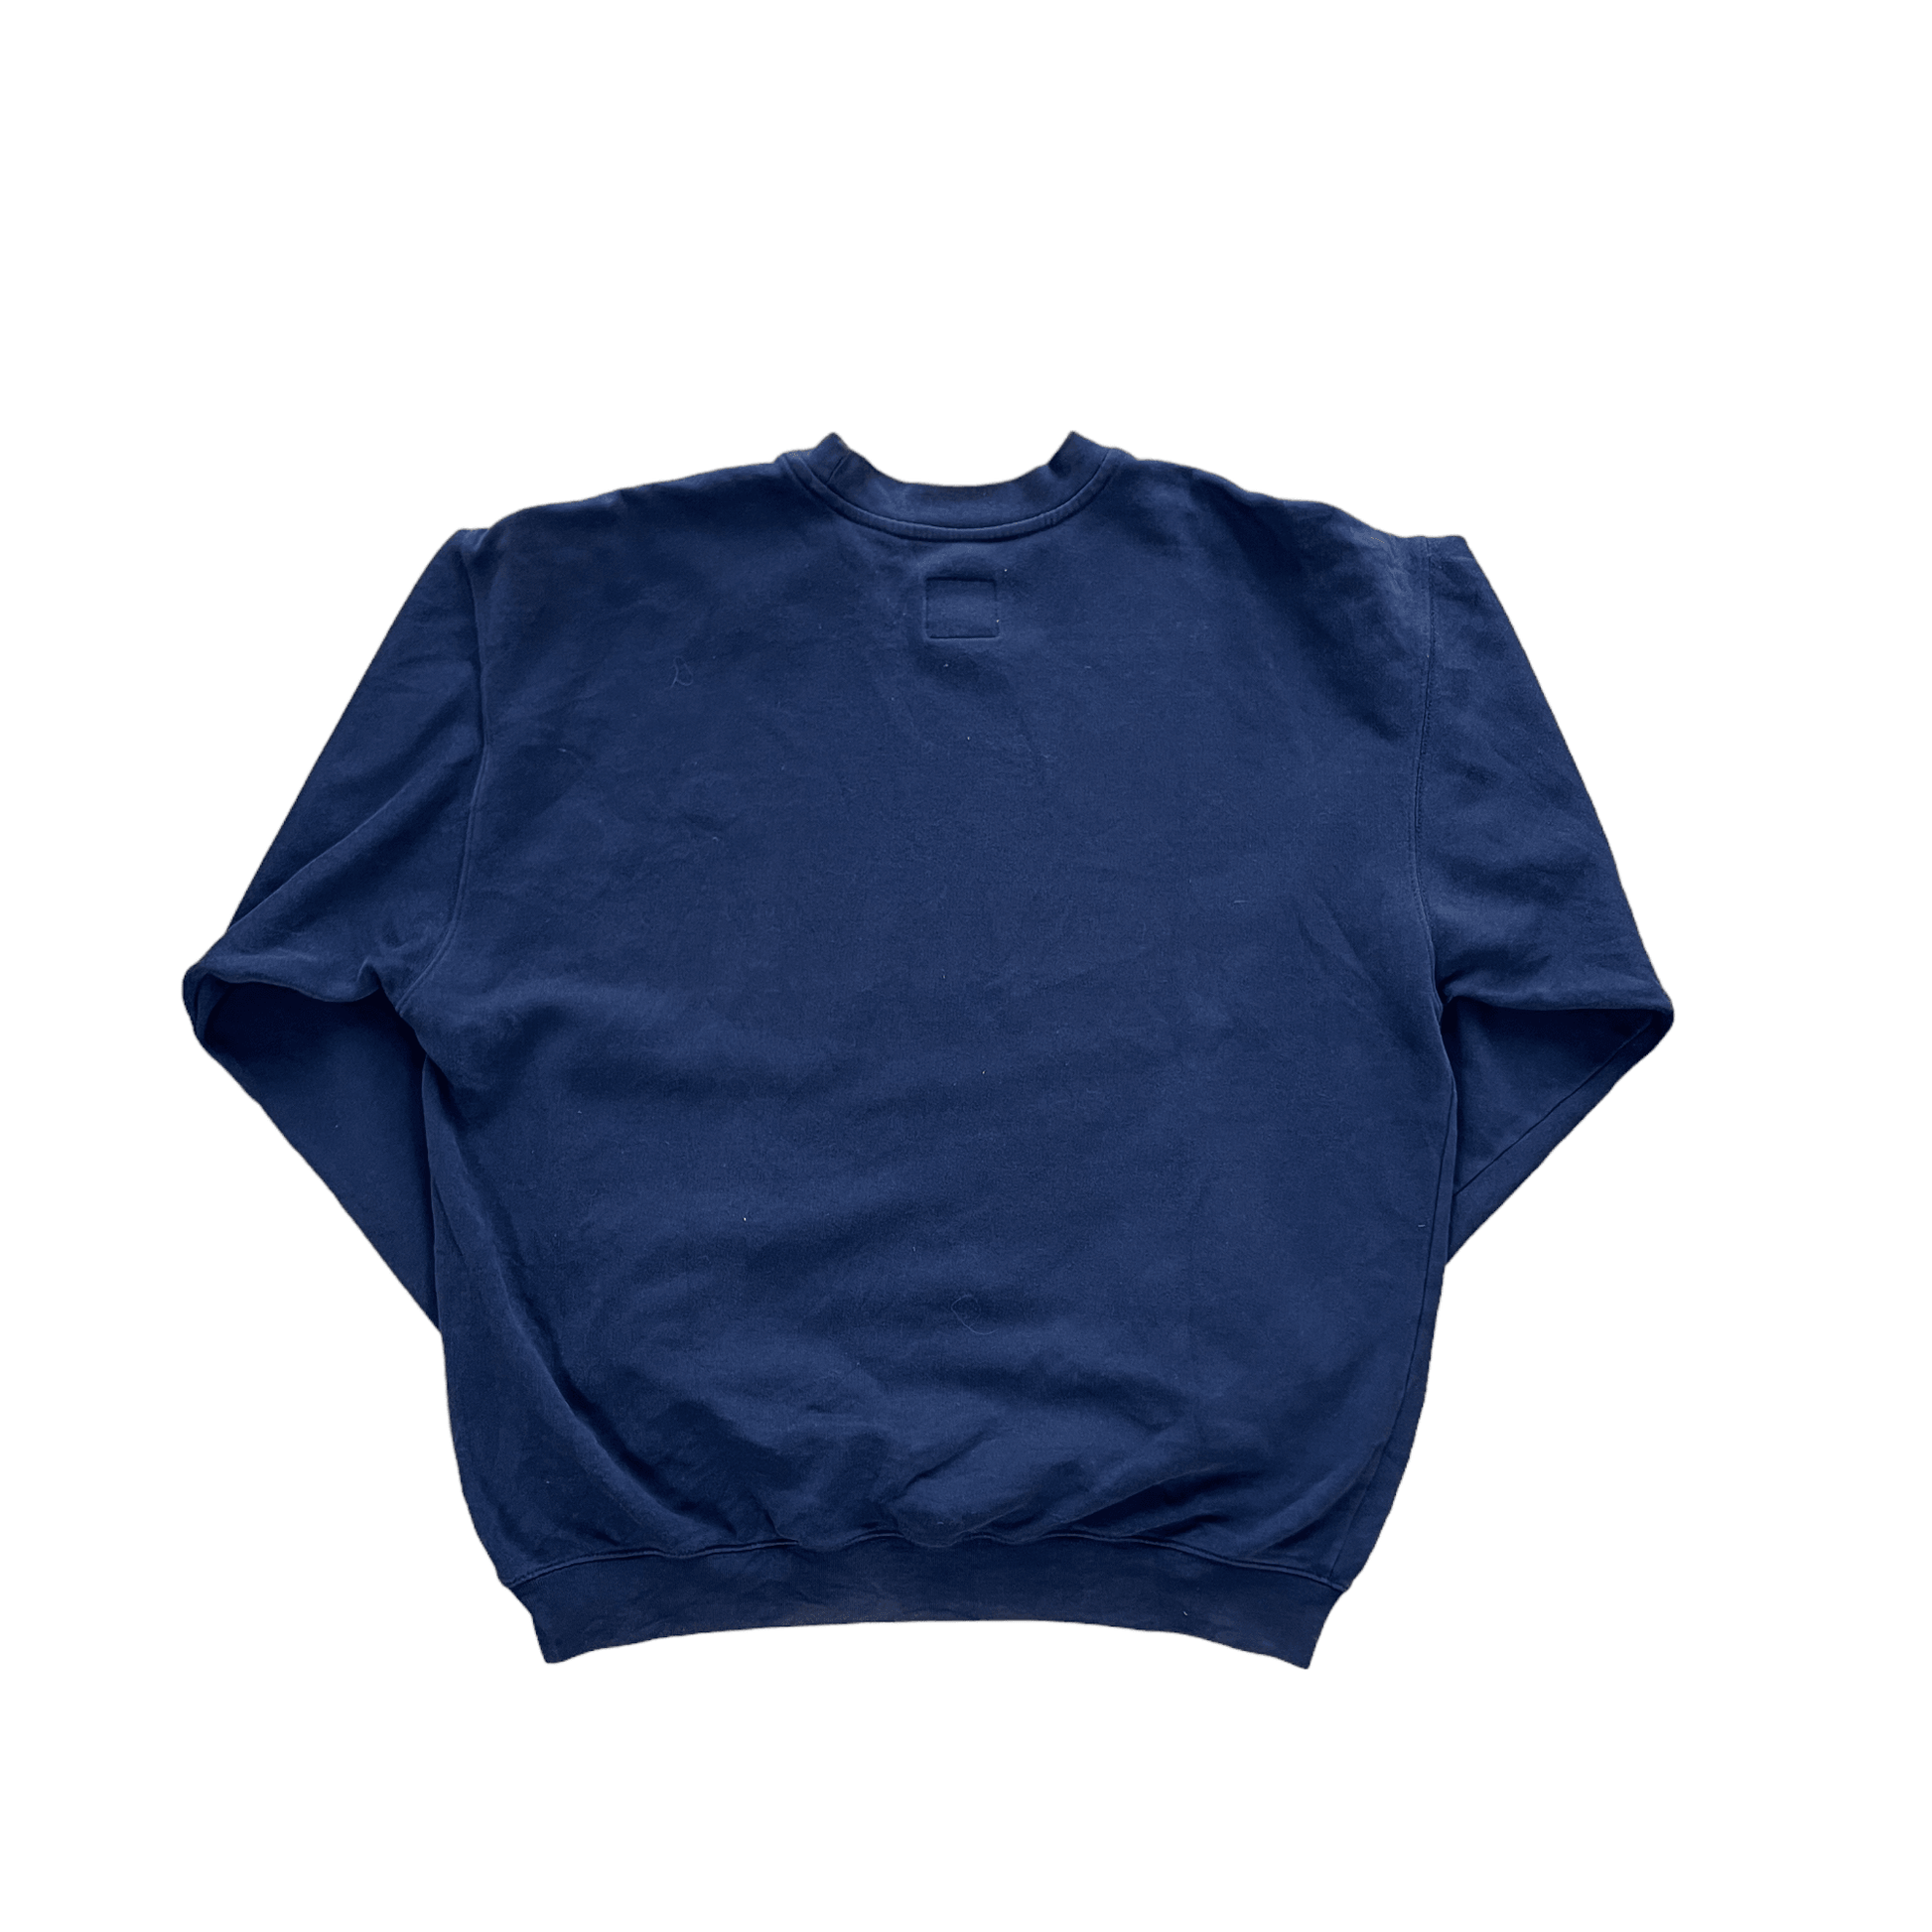 Vintage 90s Navy Blue Nike Sweatshirt - Large - The Streetwear Studio